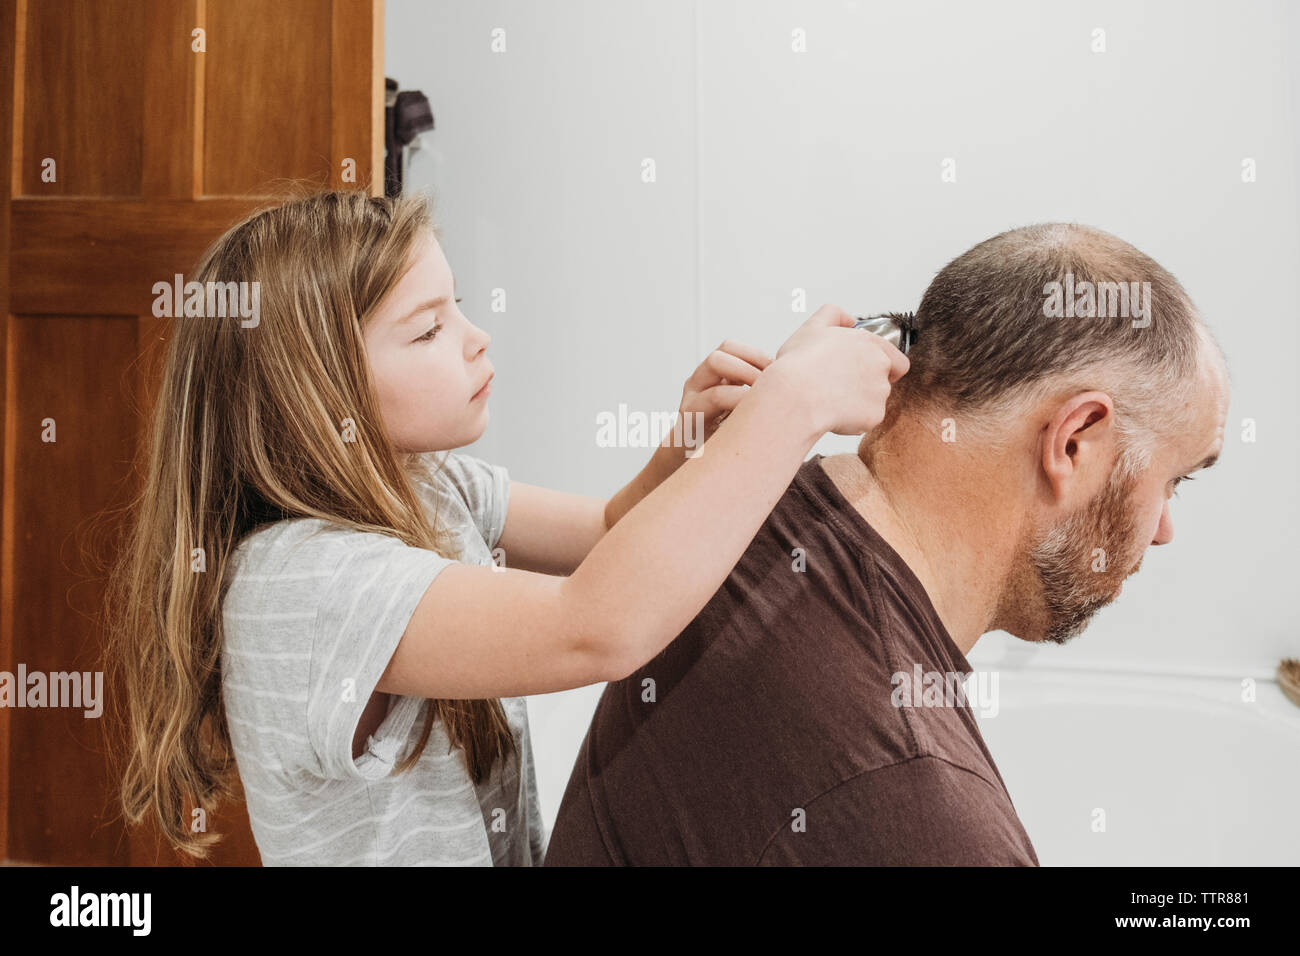 Jeune fille à l'aide de tondeuses pour couper les cheveux de son père Banque D'Images